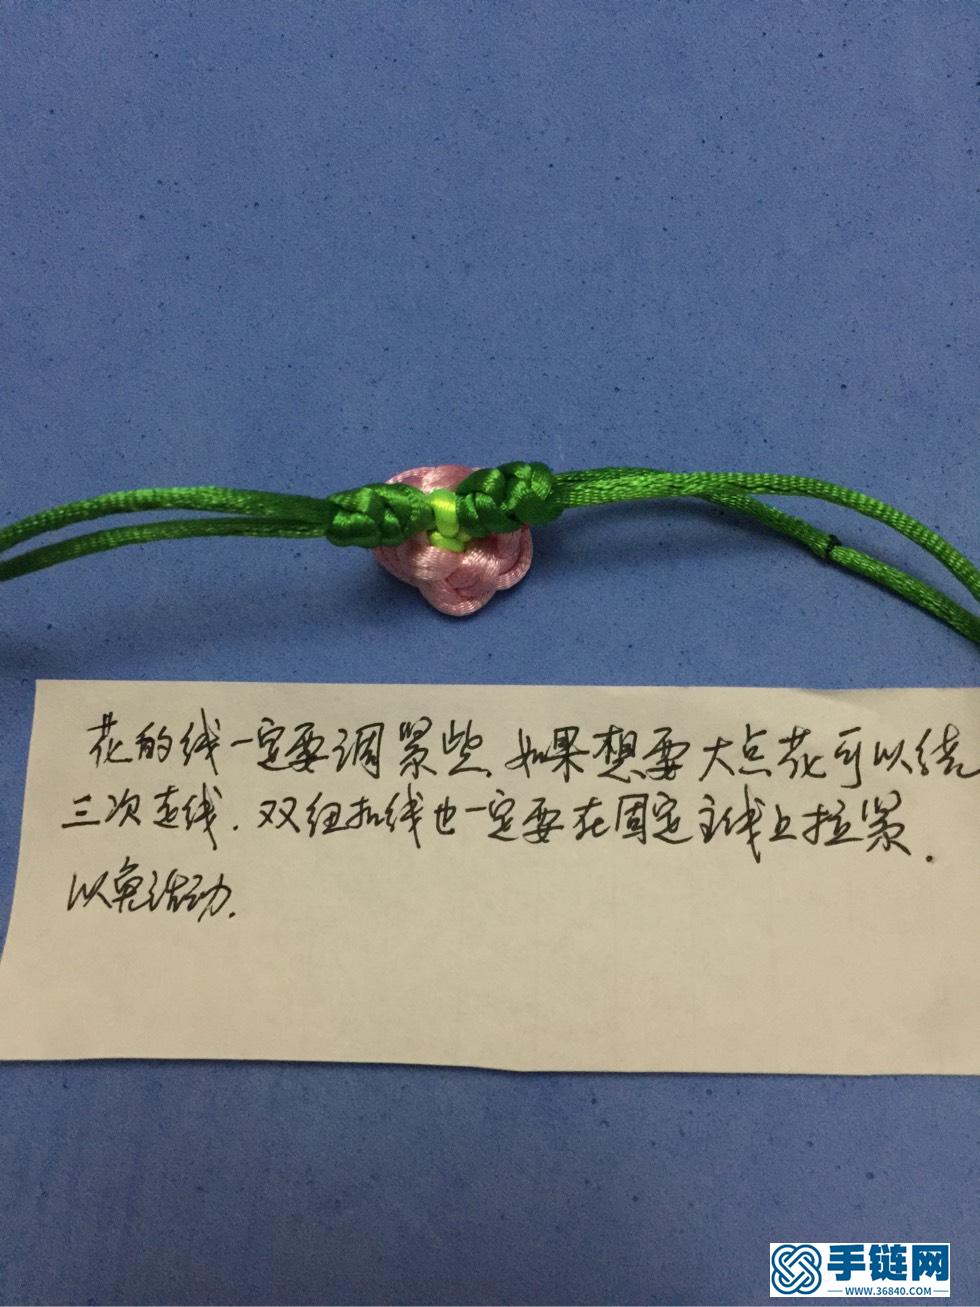 小花手链，引用老师们的基础结，创作一条小花手链